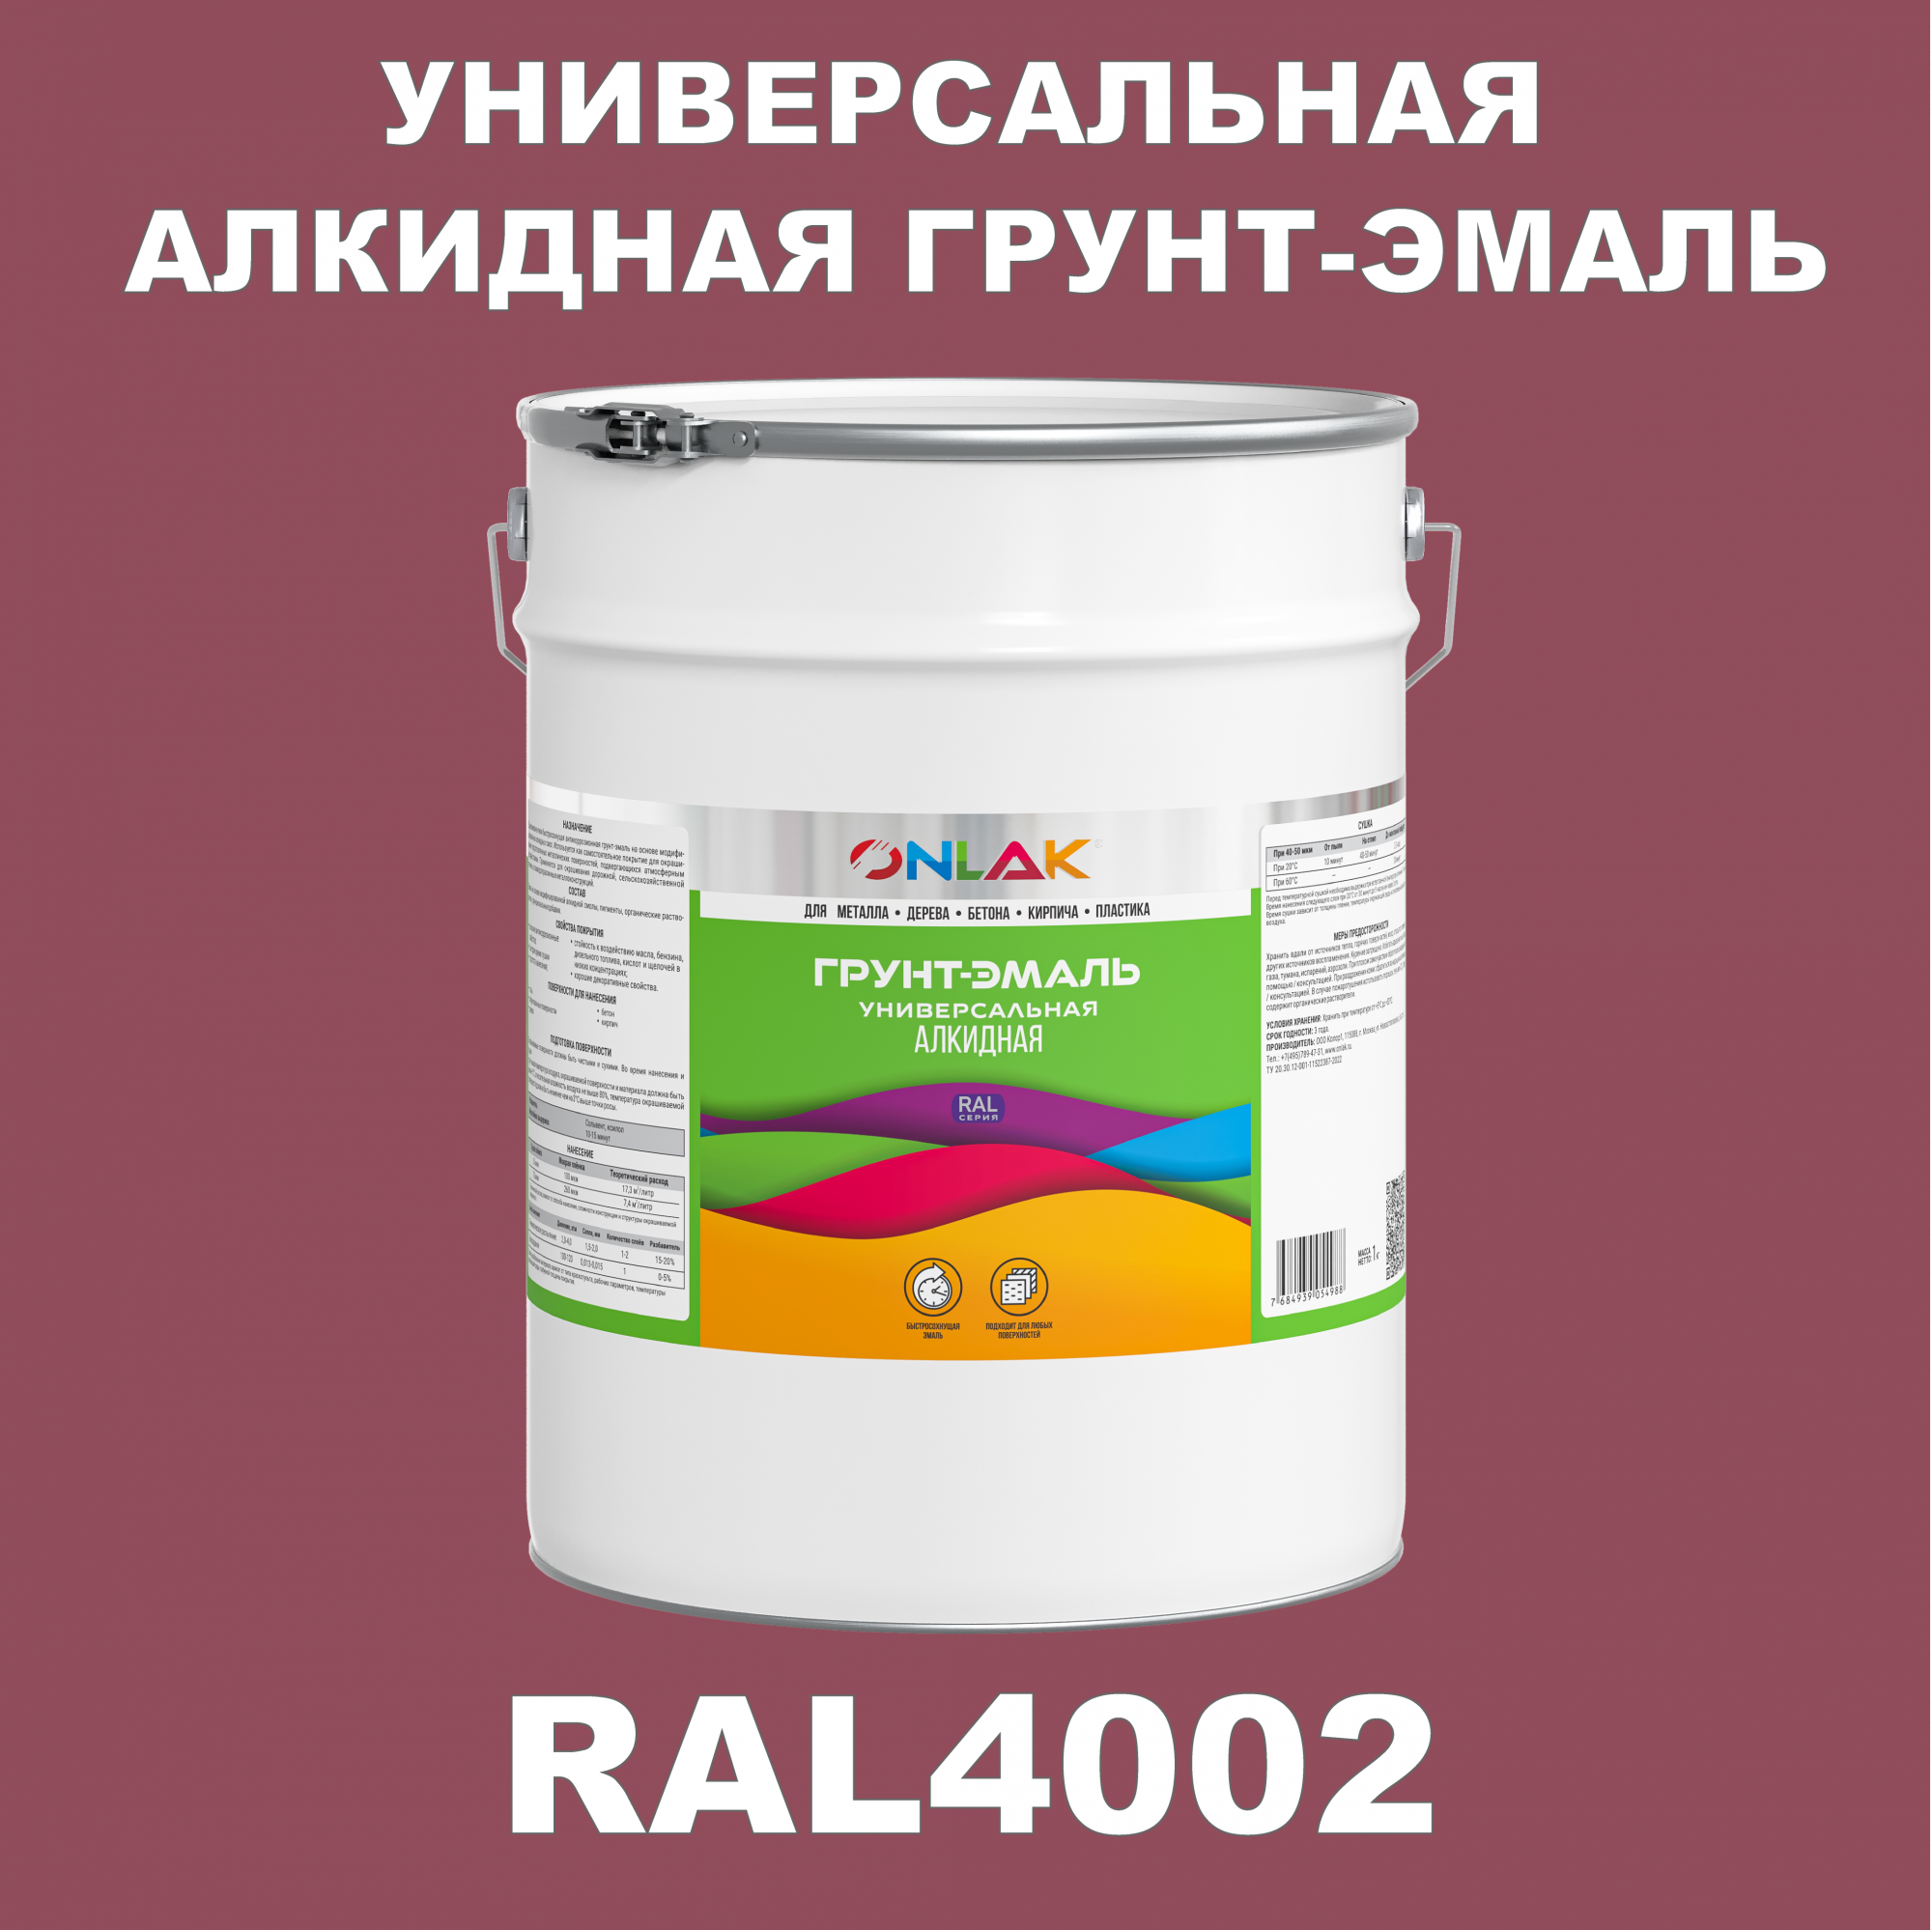 Грунт-эмаль ONLAK 1К RAL4002 антикоррозионная алкидная по металлу по ржавчине 20 кг artuniq color violet ной грунт для аквариума фиолетовый 1 кг